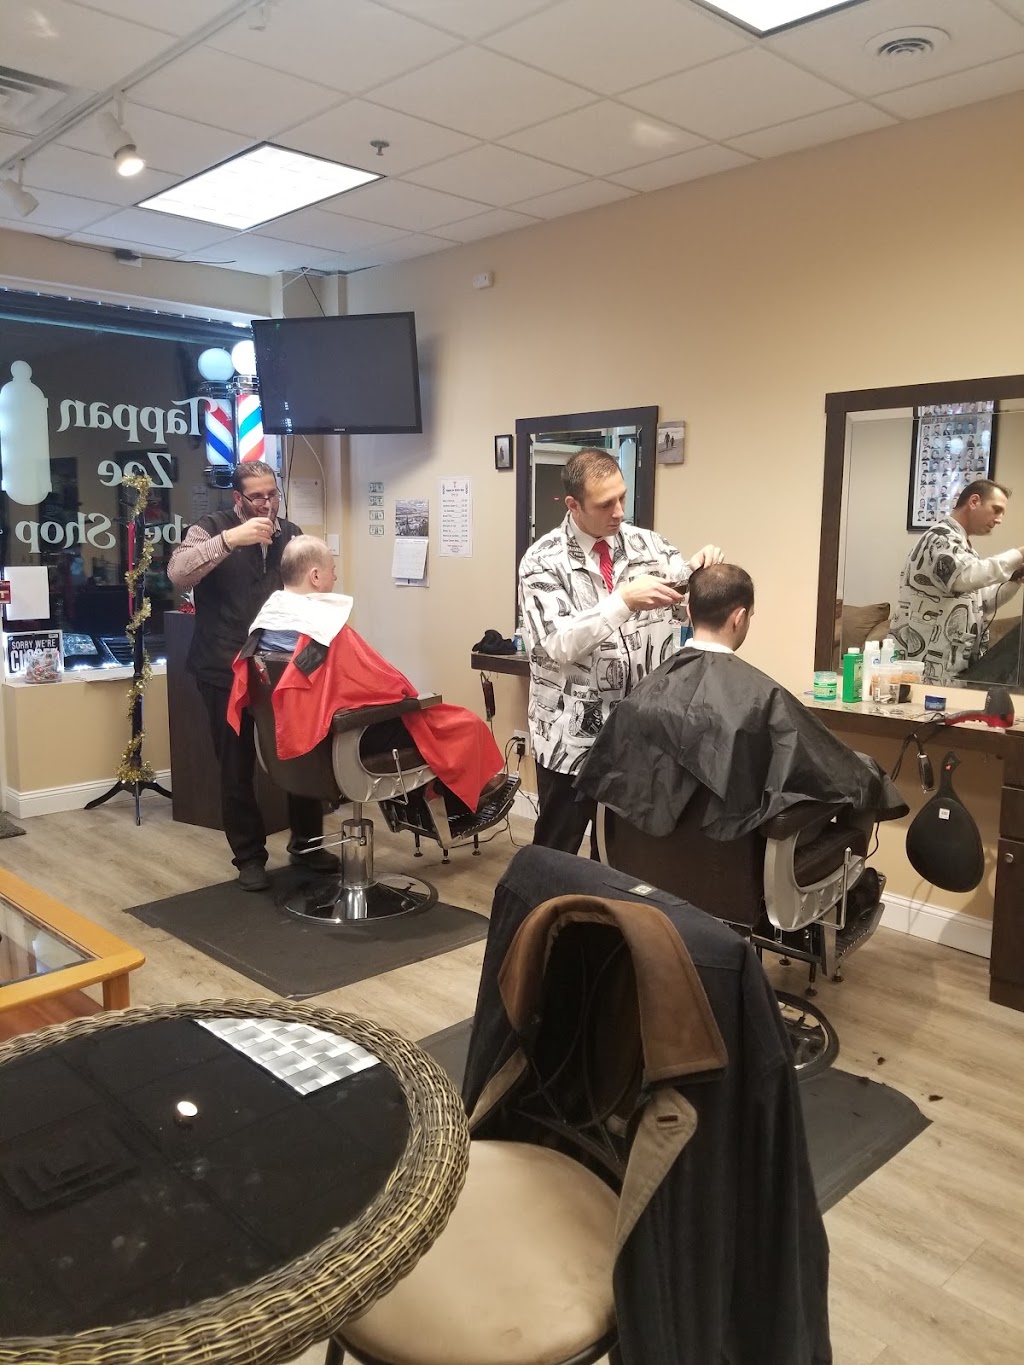 Tappan zee barbershop | 580 NY-303, Blauvelt, NY 10913, USA | Phone: (845) 848-2090